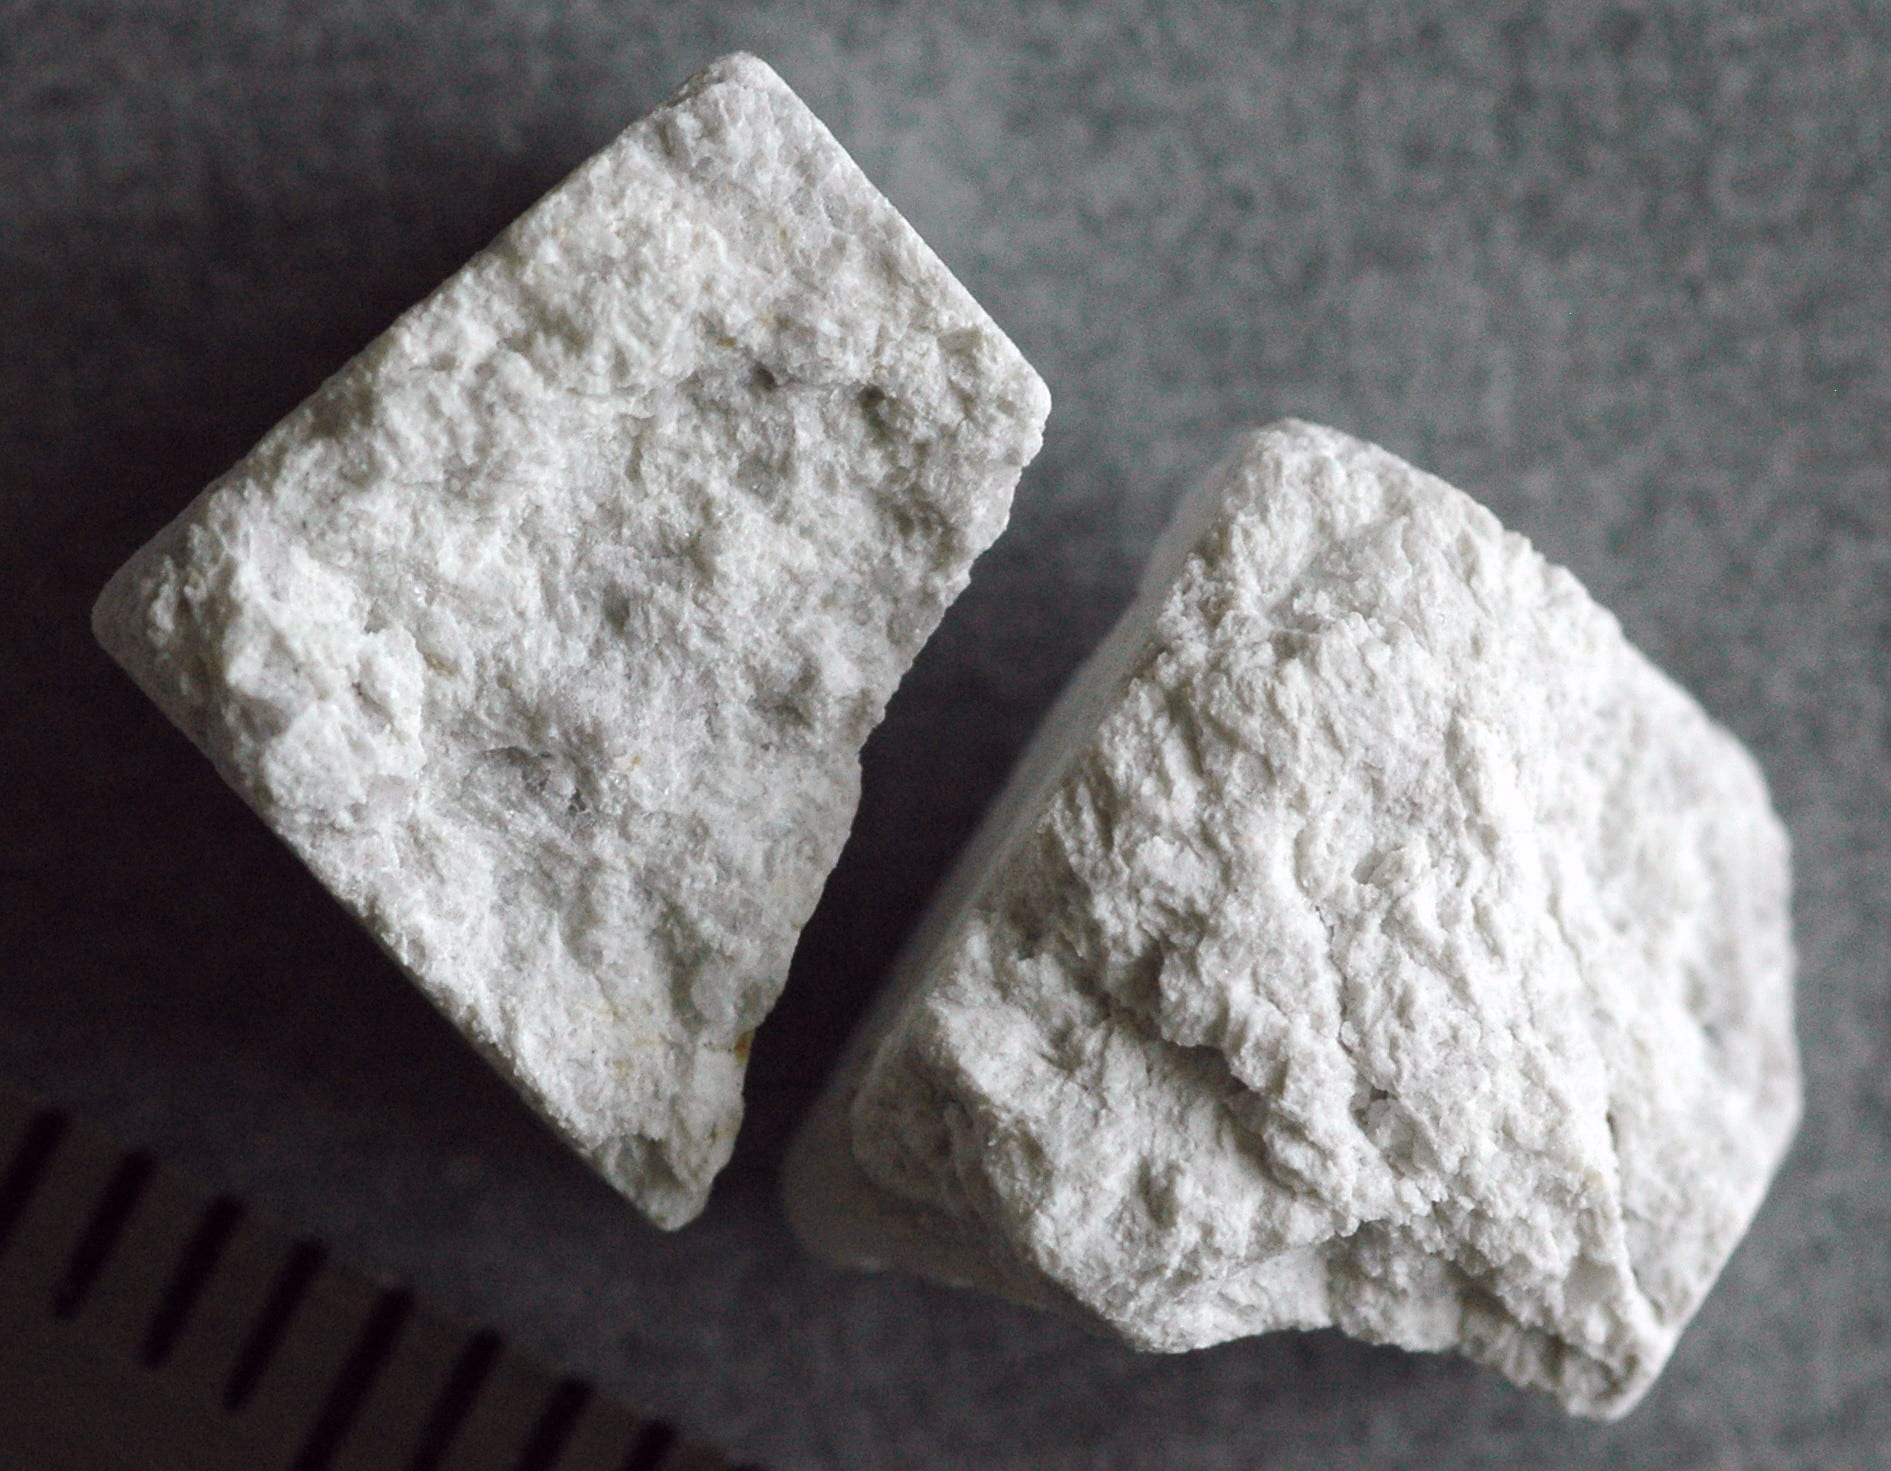 Fragmenty próbki anortozytu